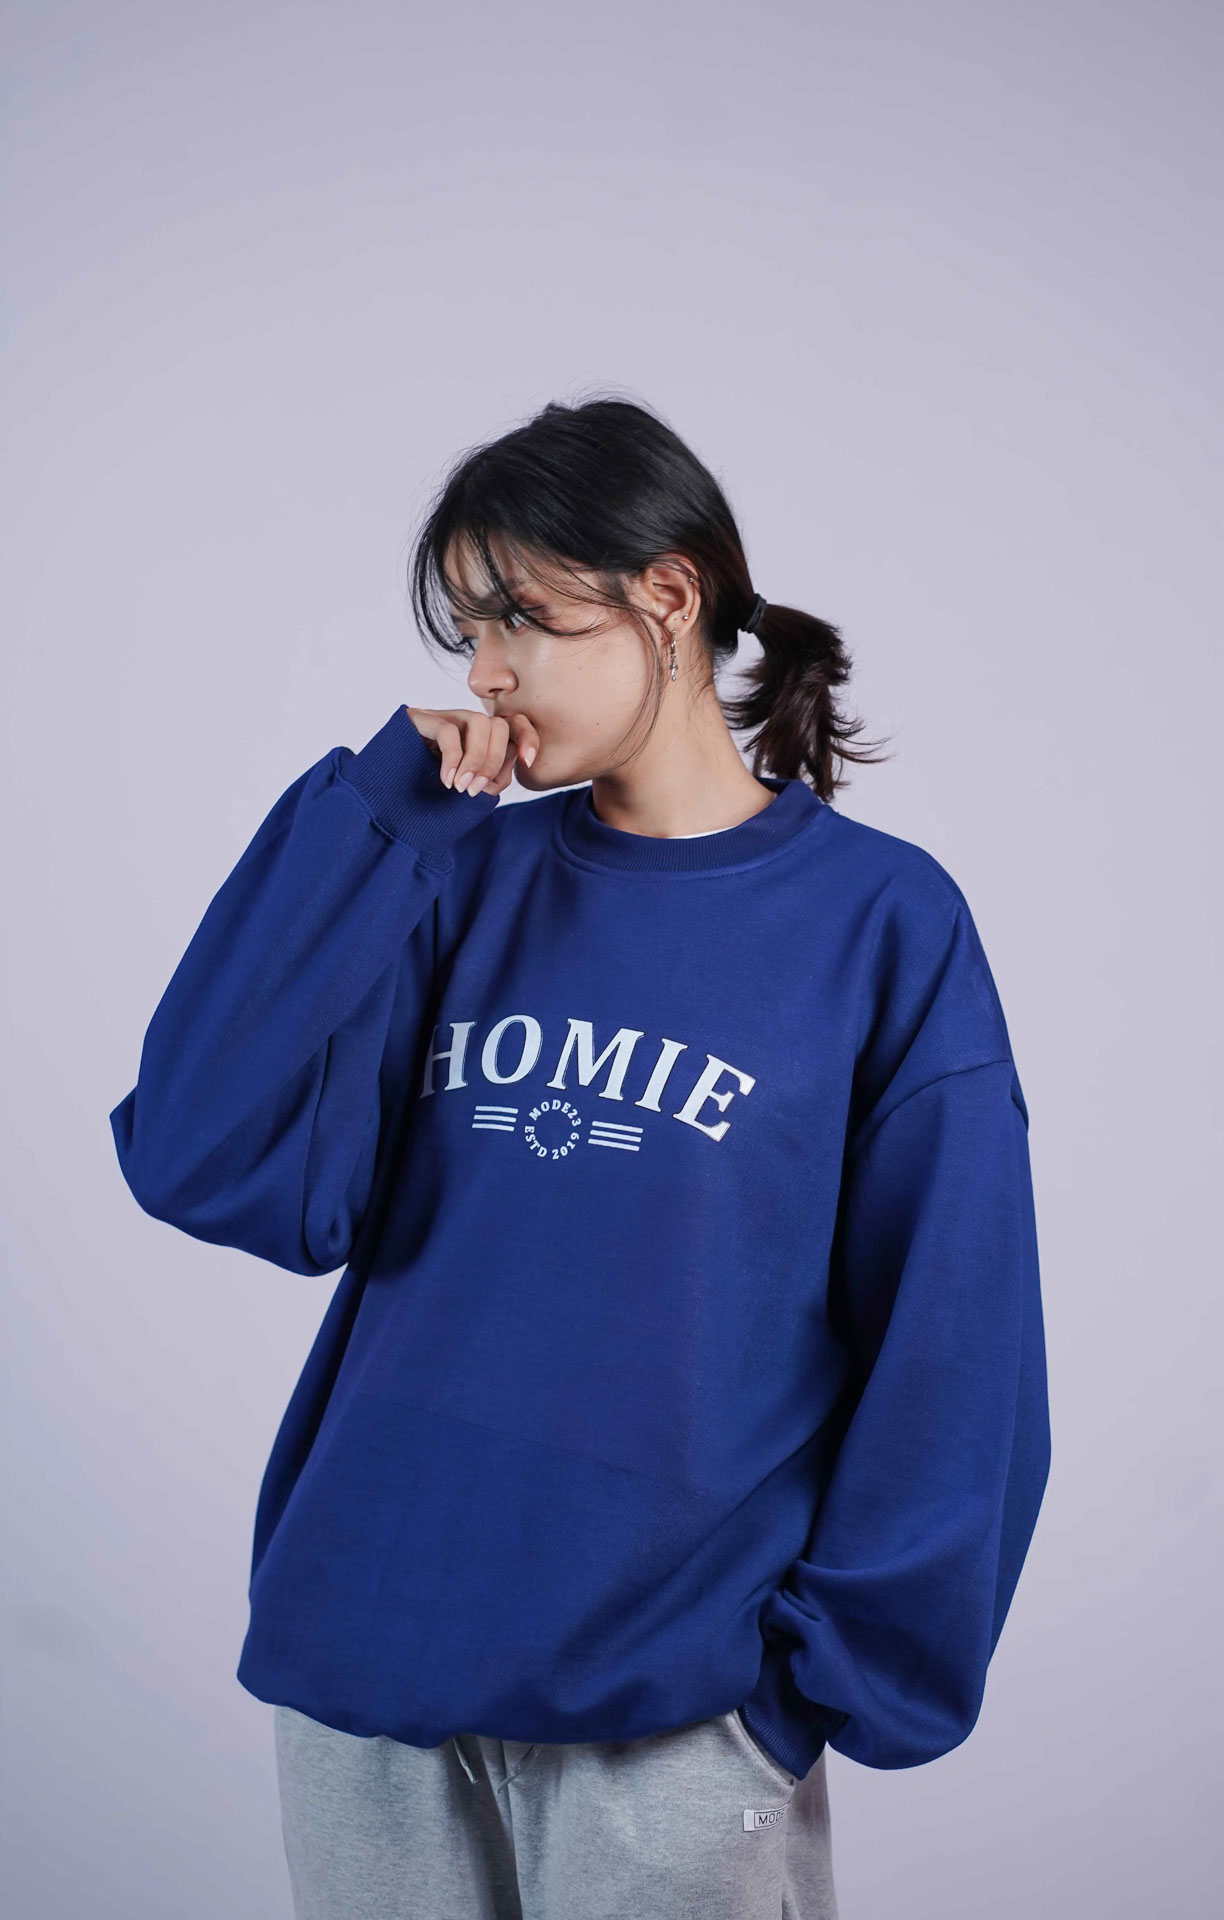 Homie Printed Sweatshirt